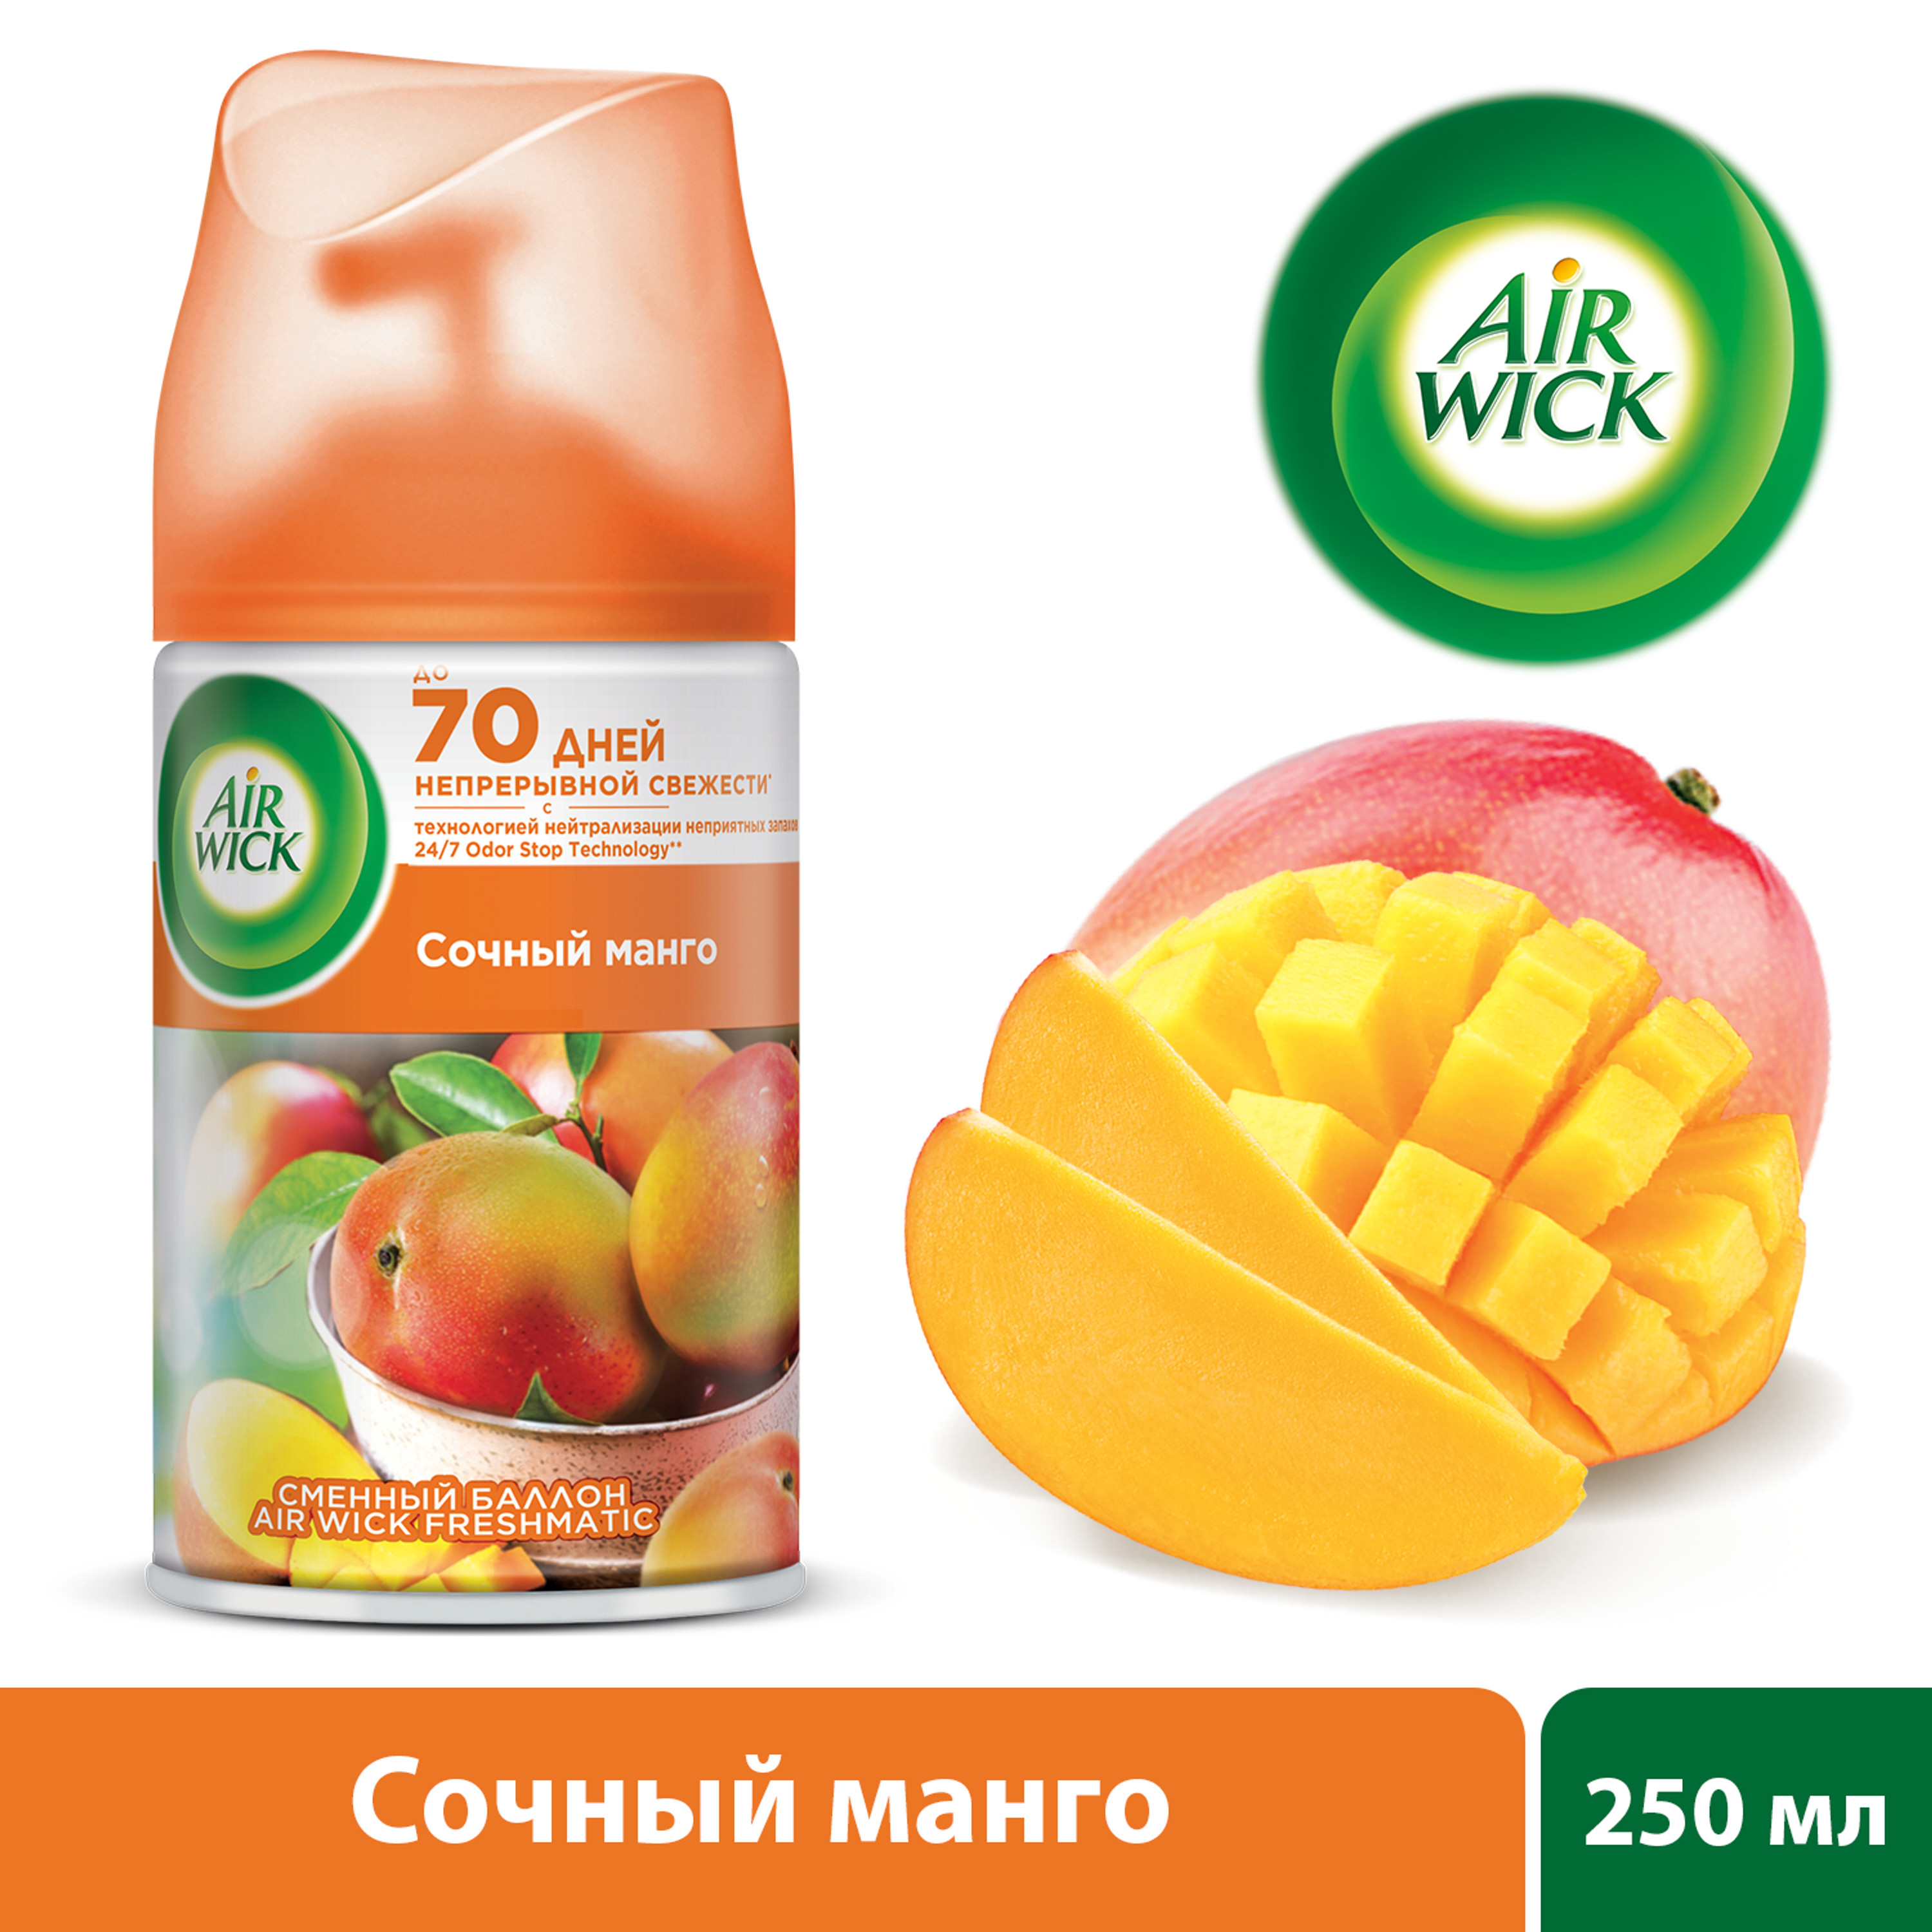 Сменный баллон для освежителя воздуха Air Wick Freshmatic Сочный манго 250 мл, размер 17,2x6,6x6,6 см - фото 3